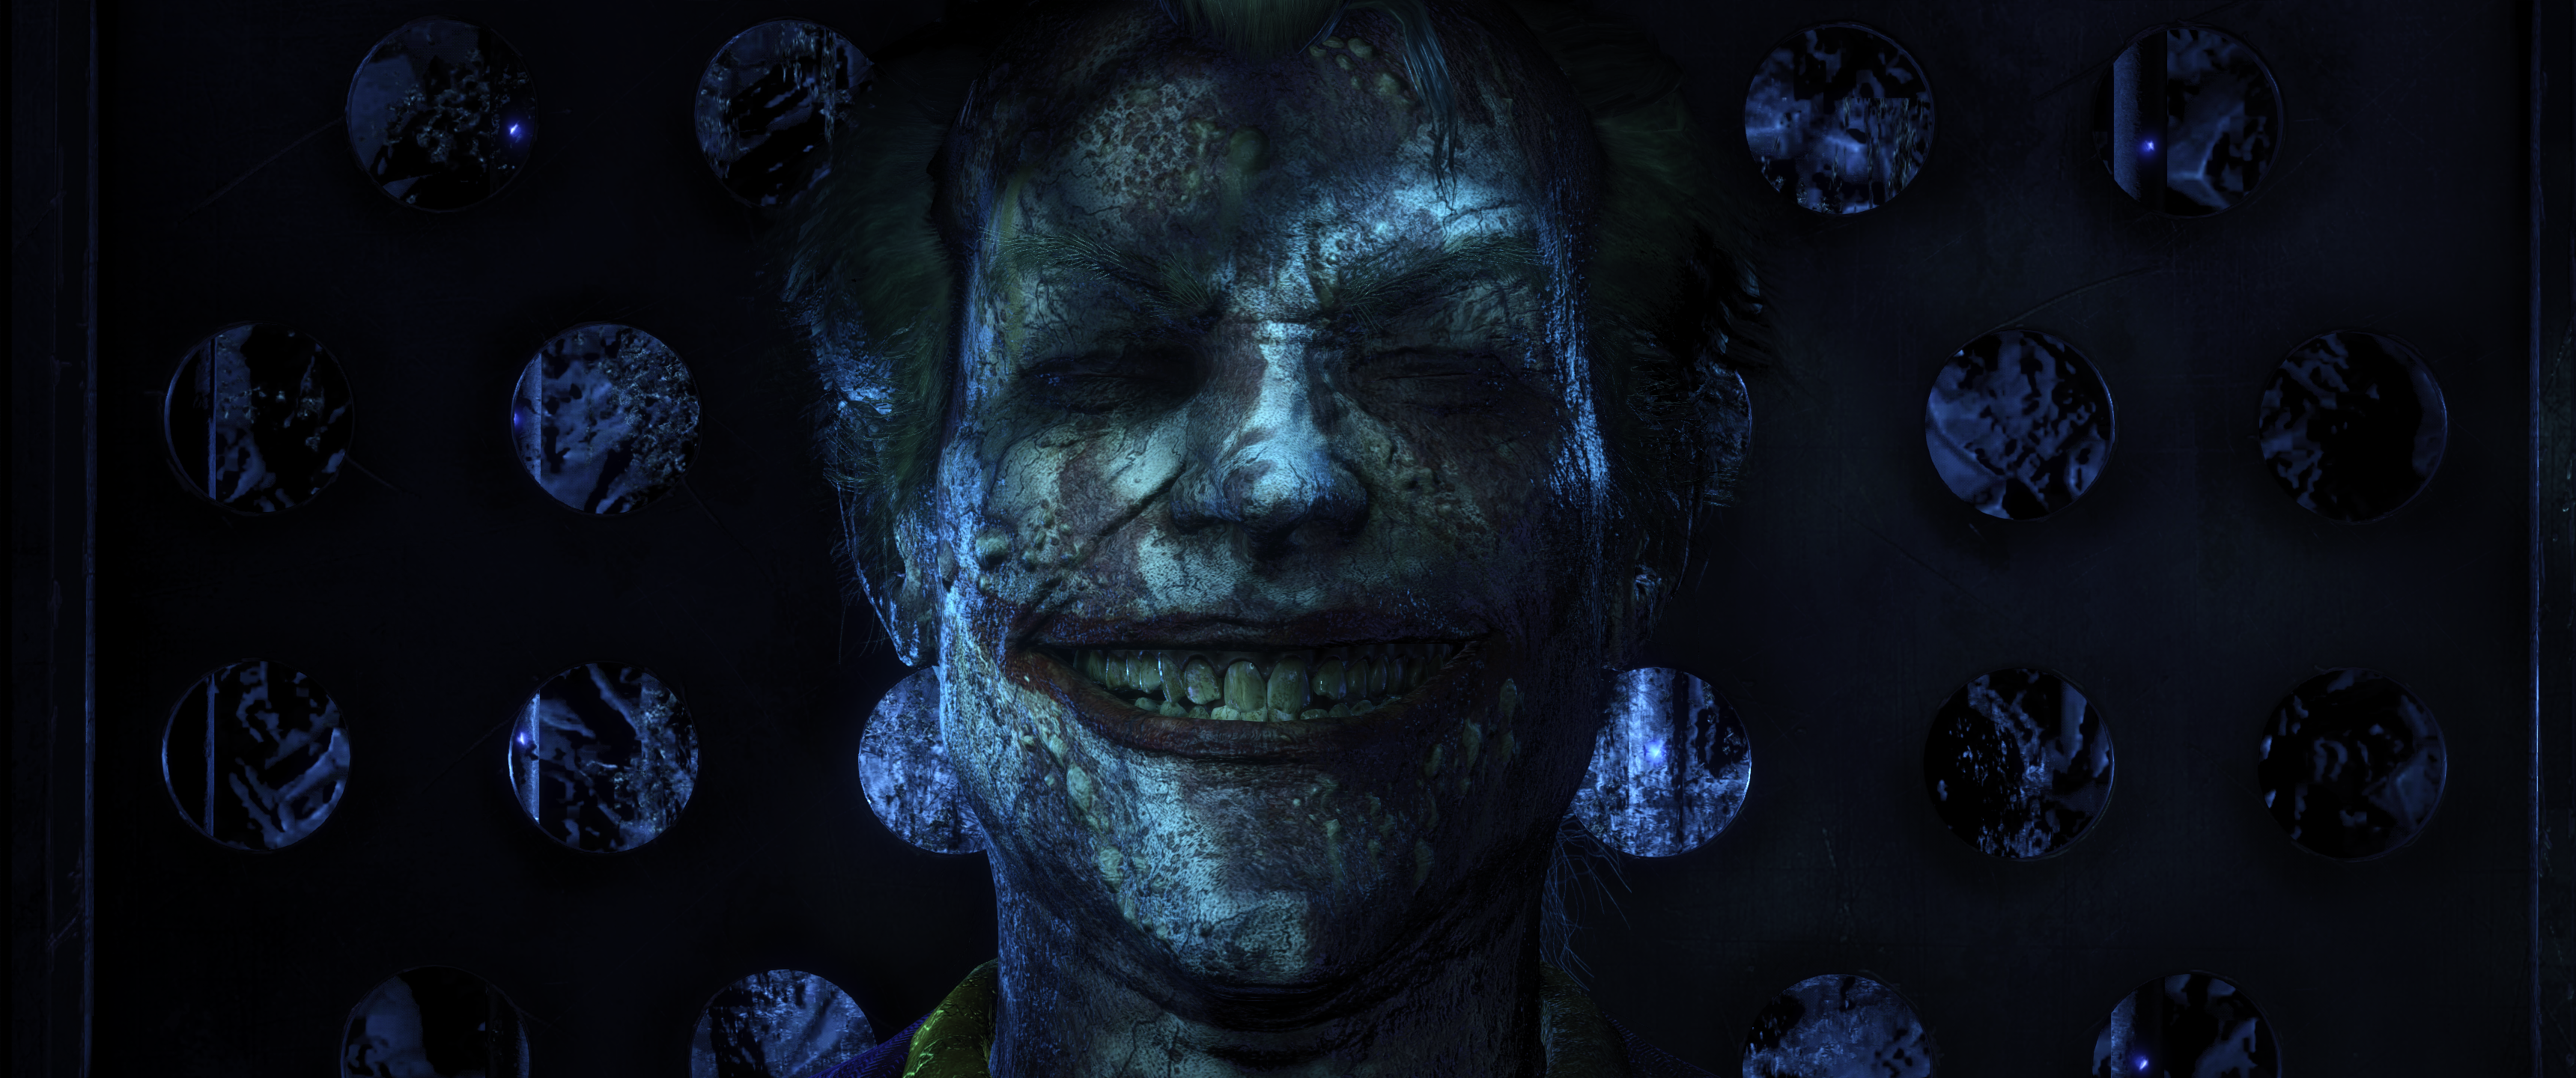 Batman Arkham Knight Joker Batman Video Games Ultrawide Villains Face Grin 3440x1440